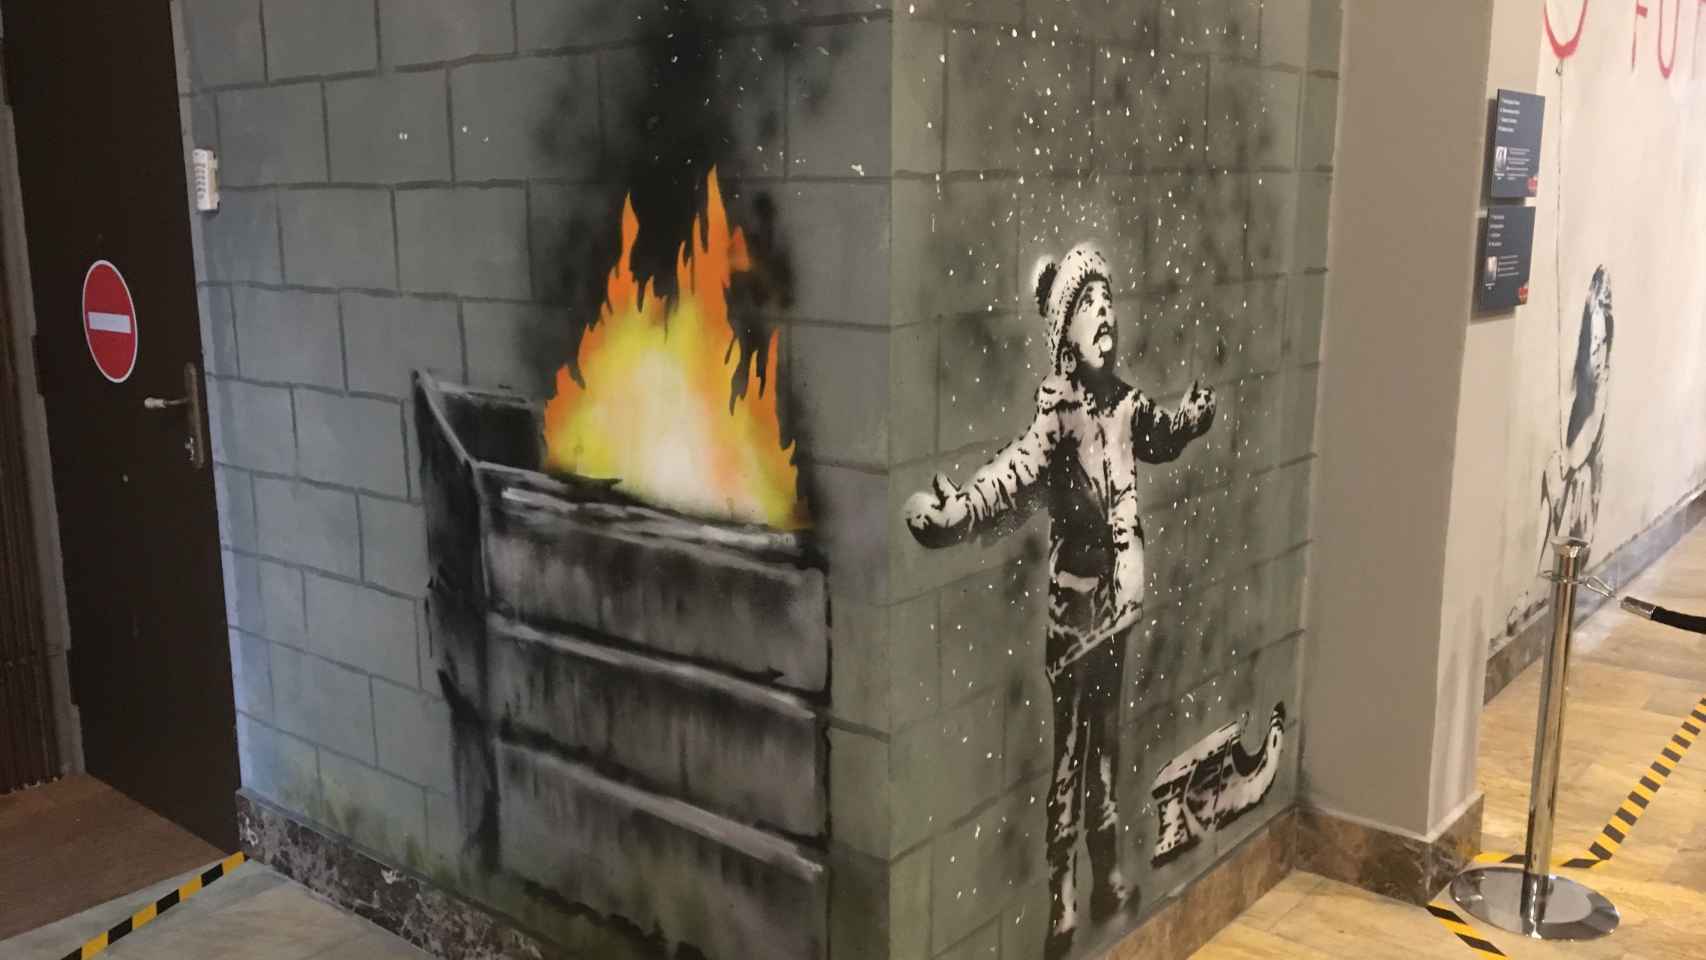 Obra de Banksy donde un niño juega con la nieve aunque en realidad son las cenizas del fuego